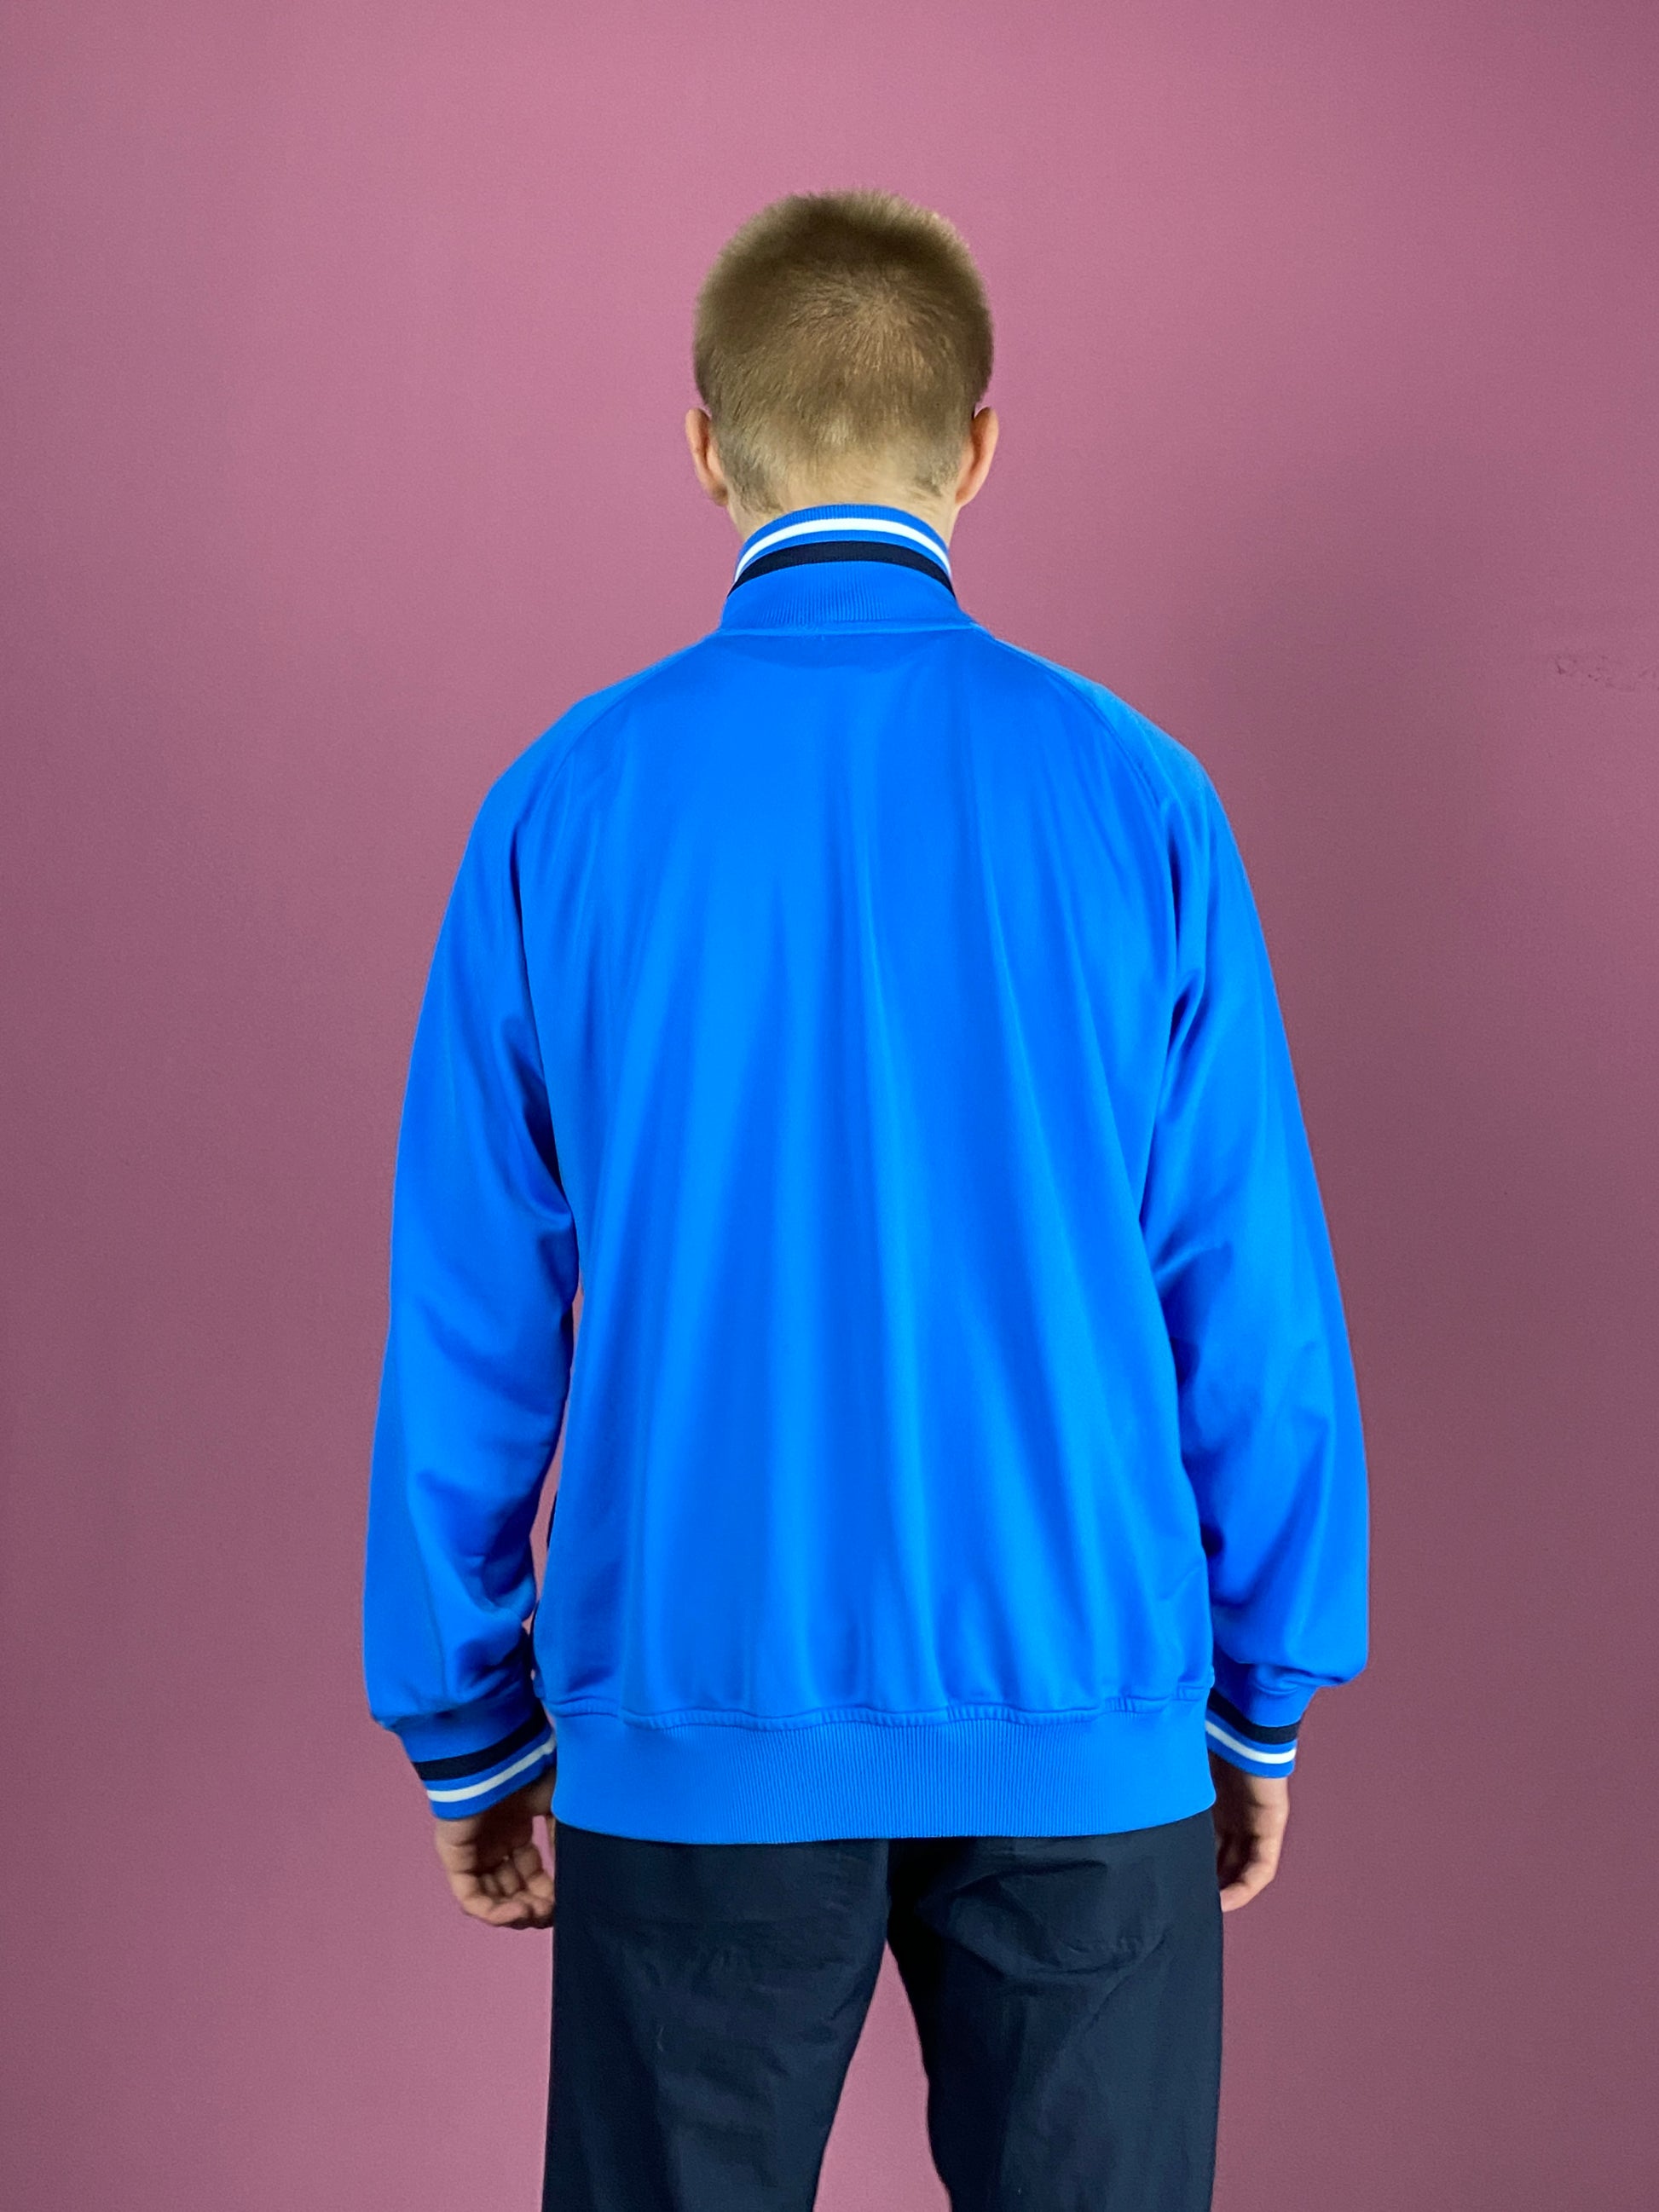 Nike Vintage Men's Track Jacket - Large Blue Polyester